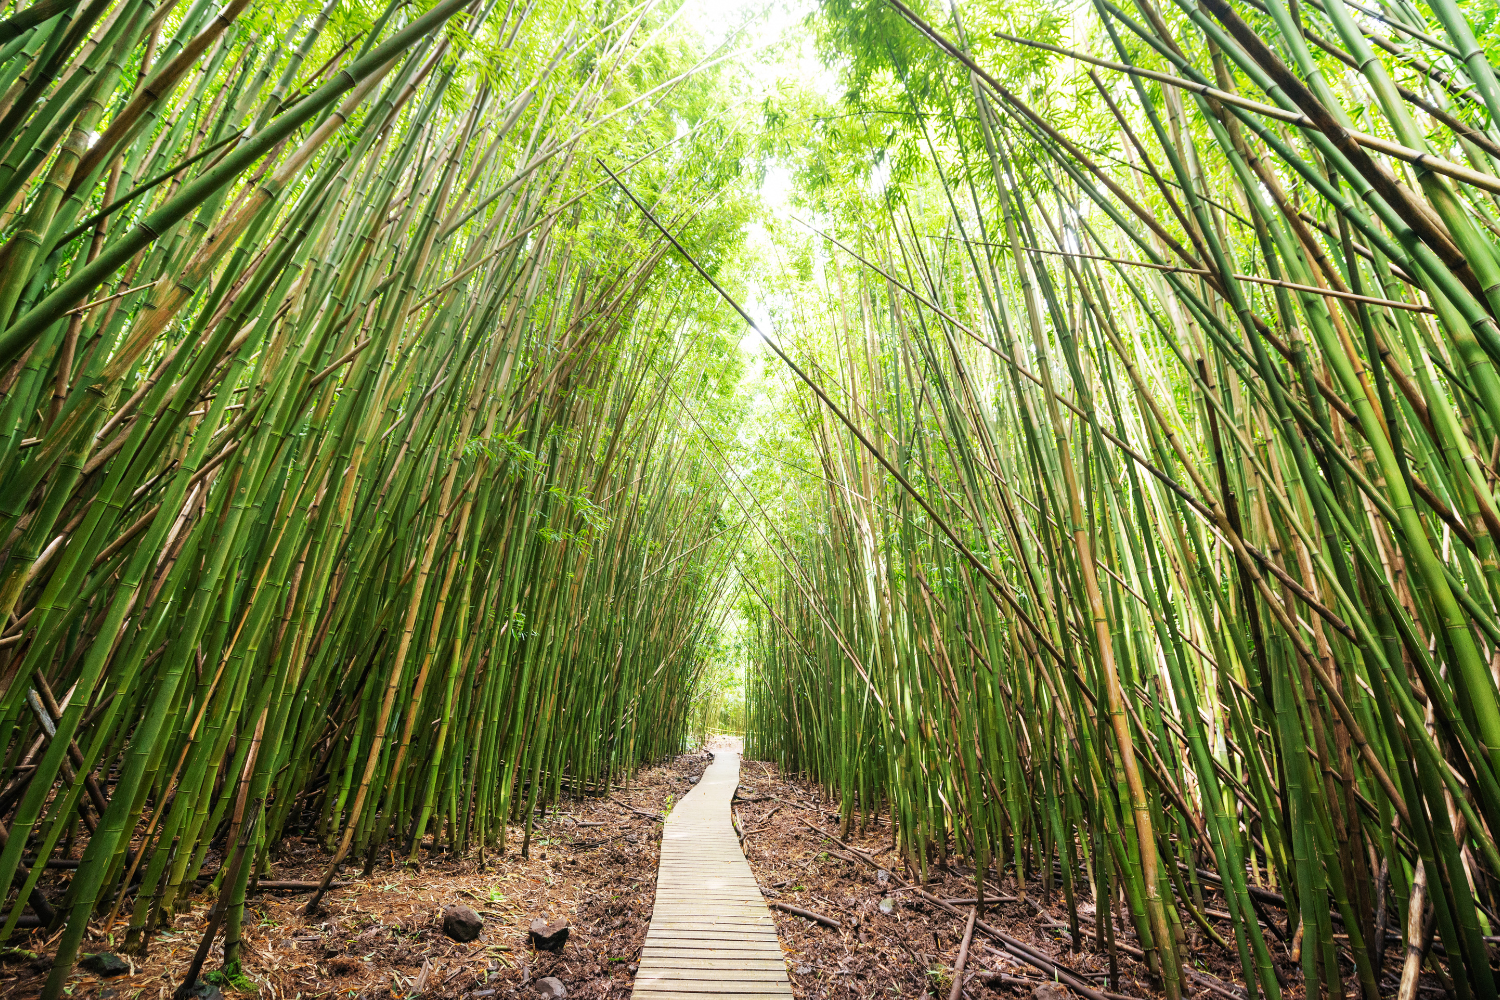 Pipiwai Trail through bamboo forest